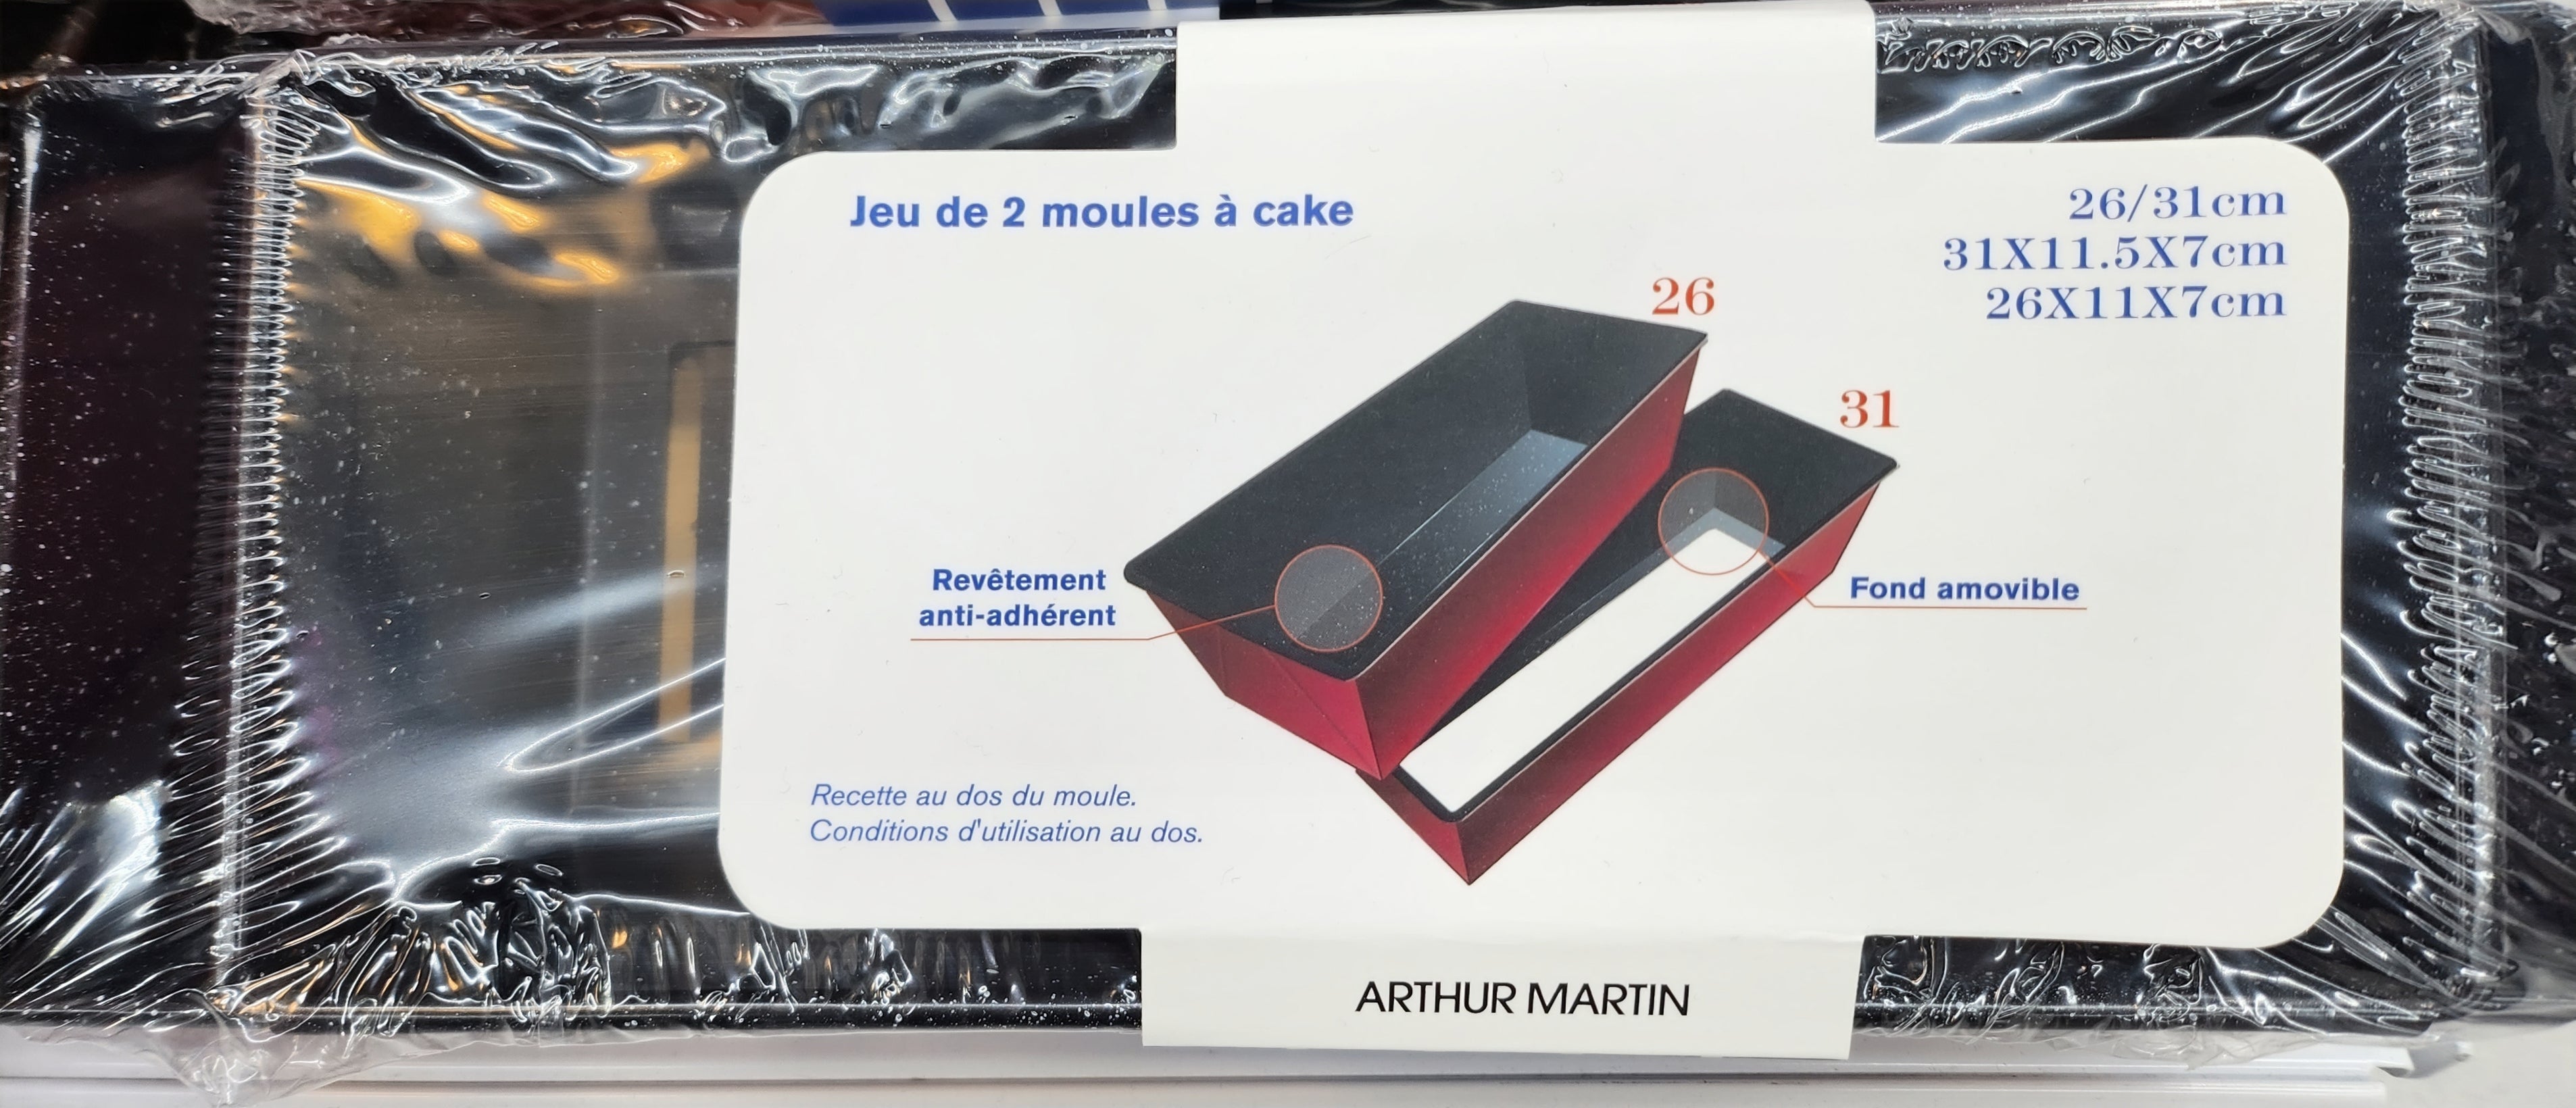 Set de 2 Moules à Cake Arthur Martin 26 et 31cm